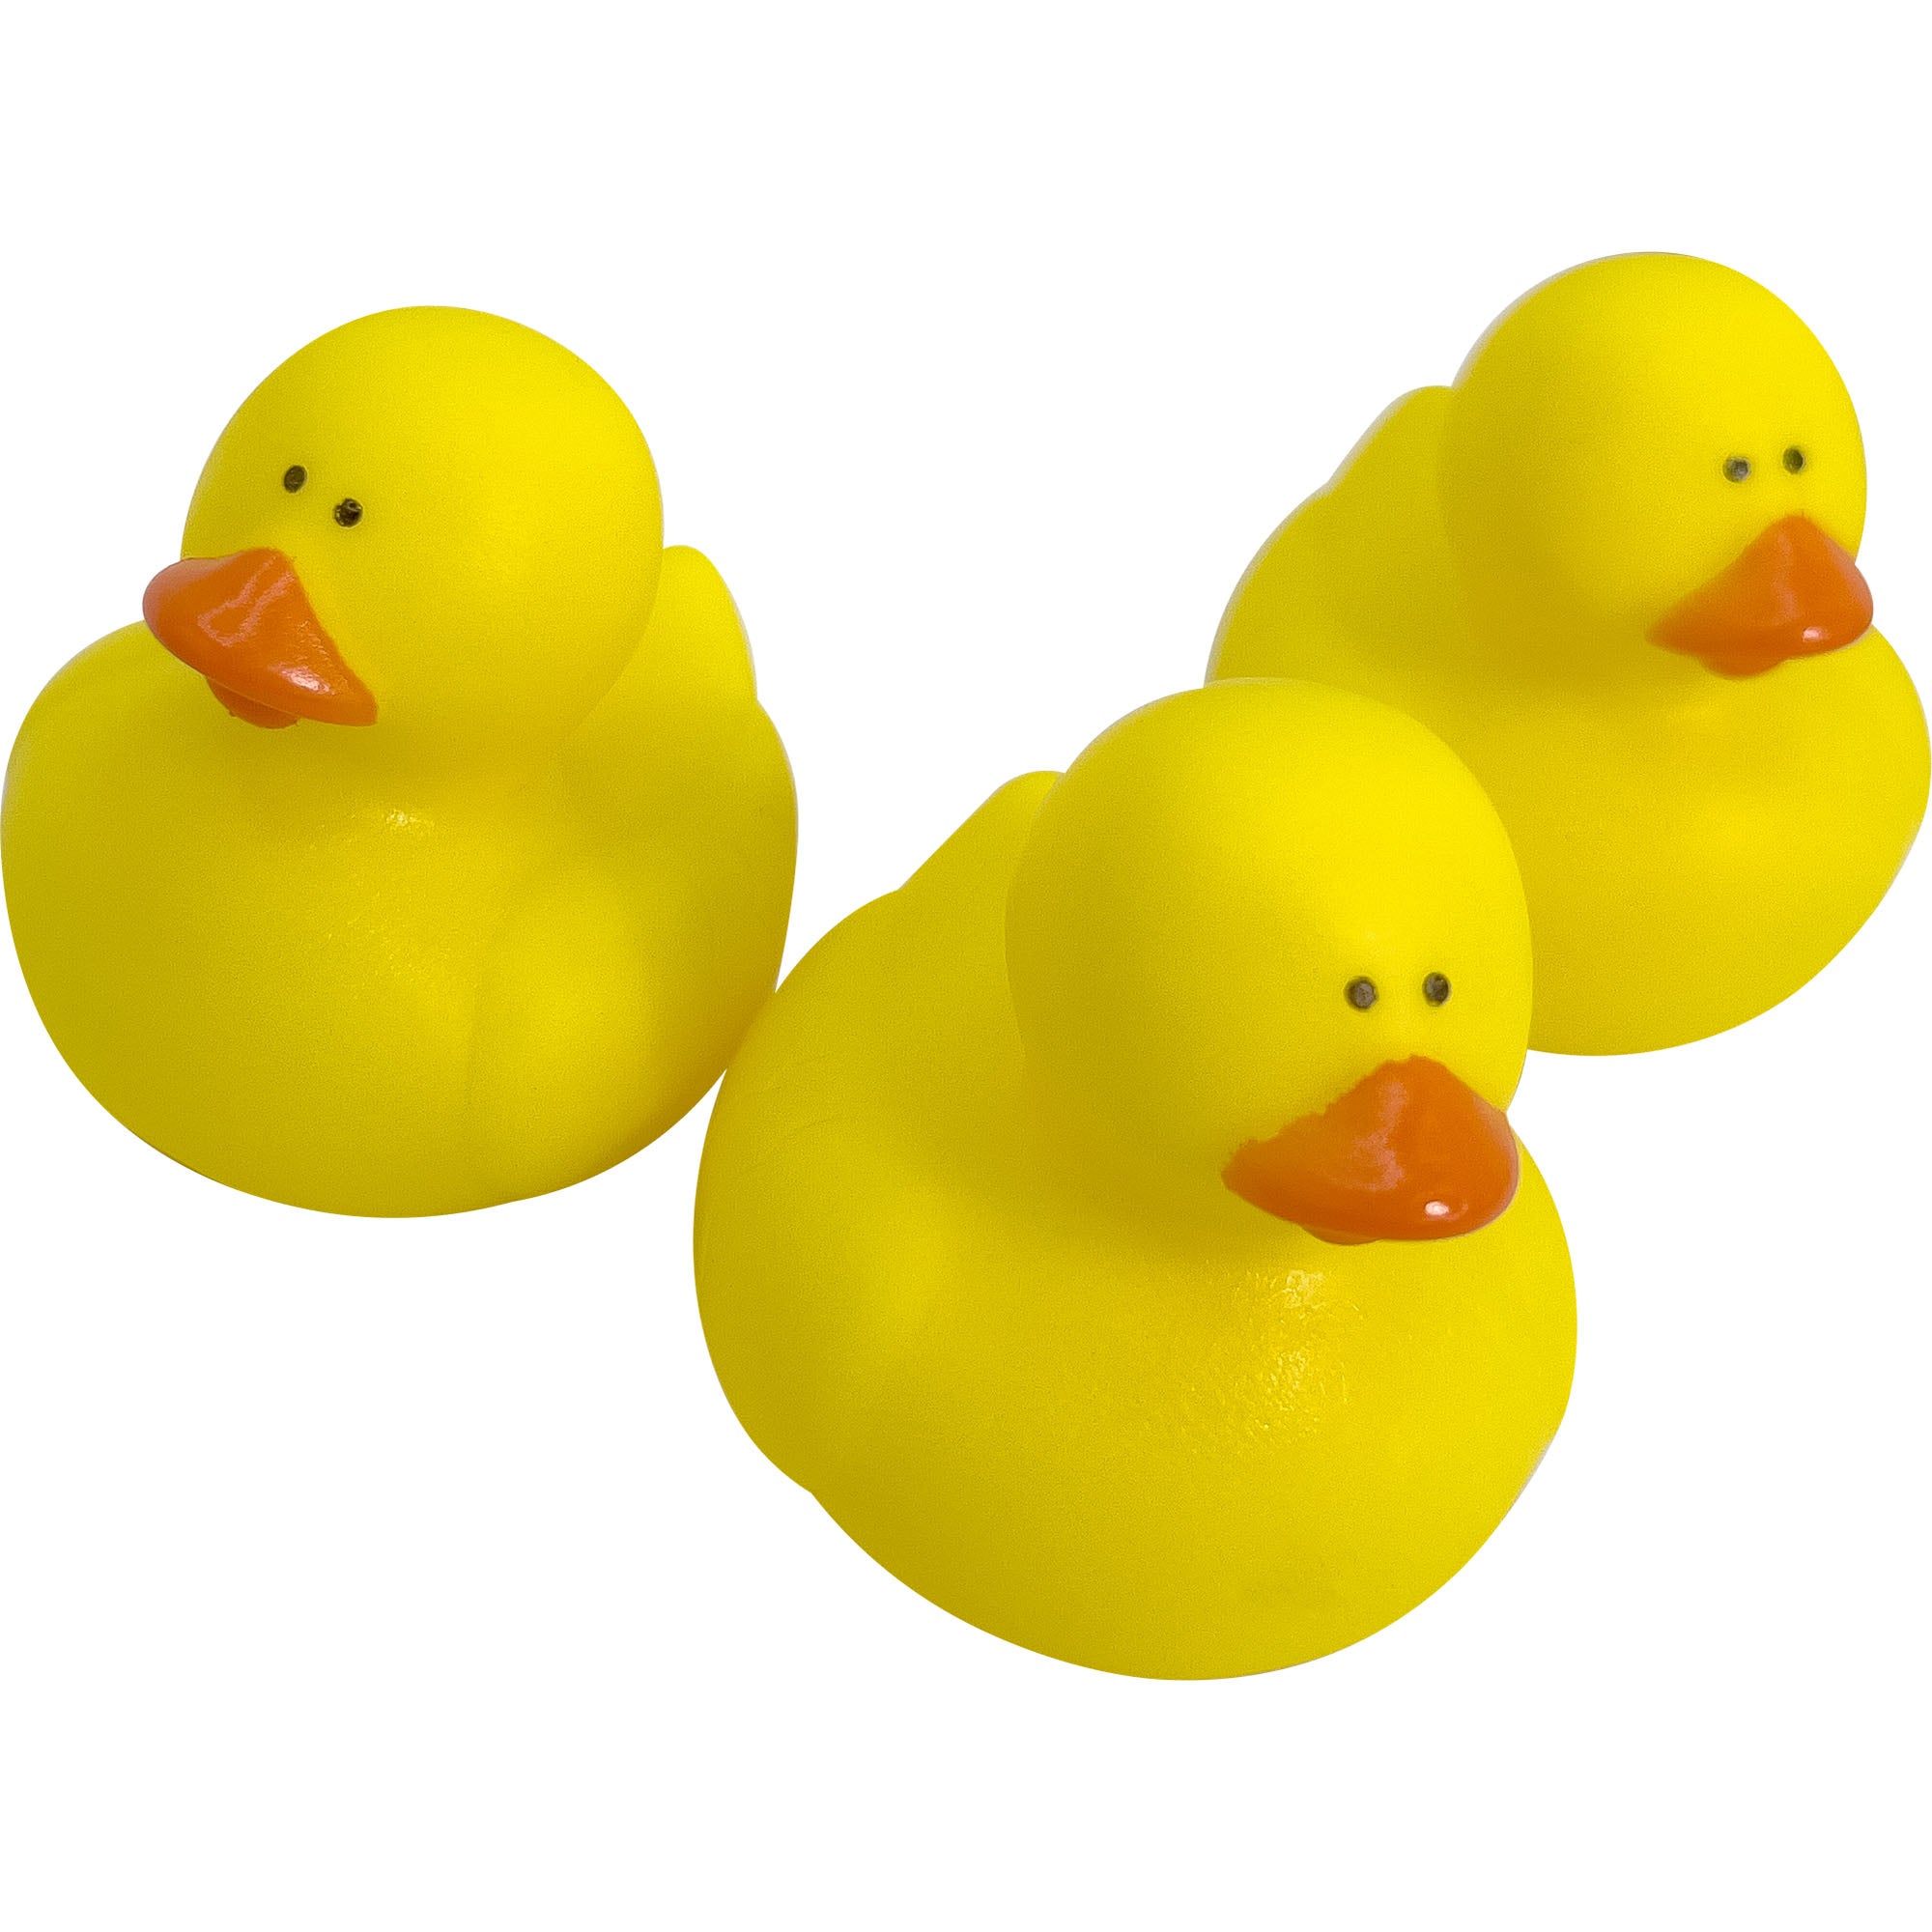 Rubber Ducks – www.